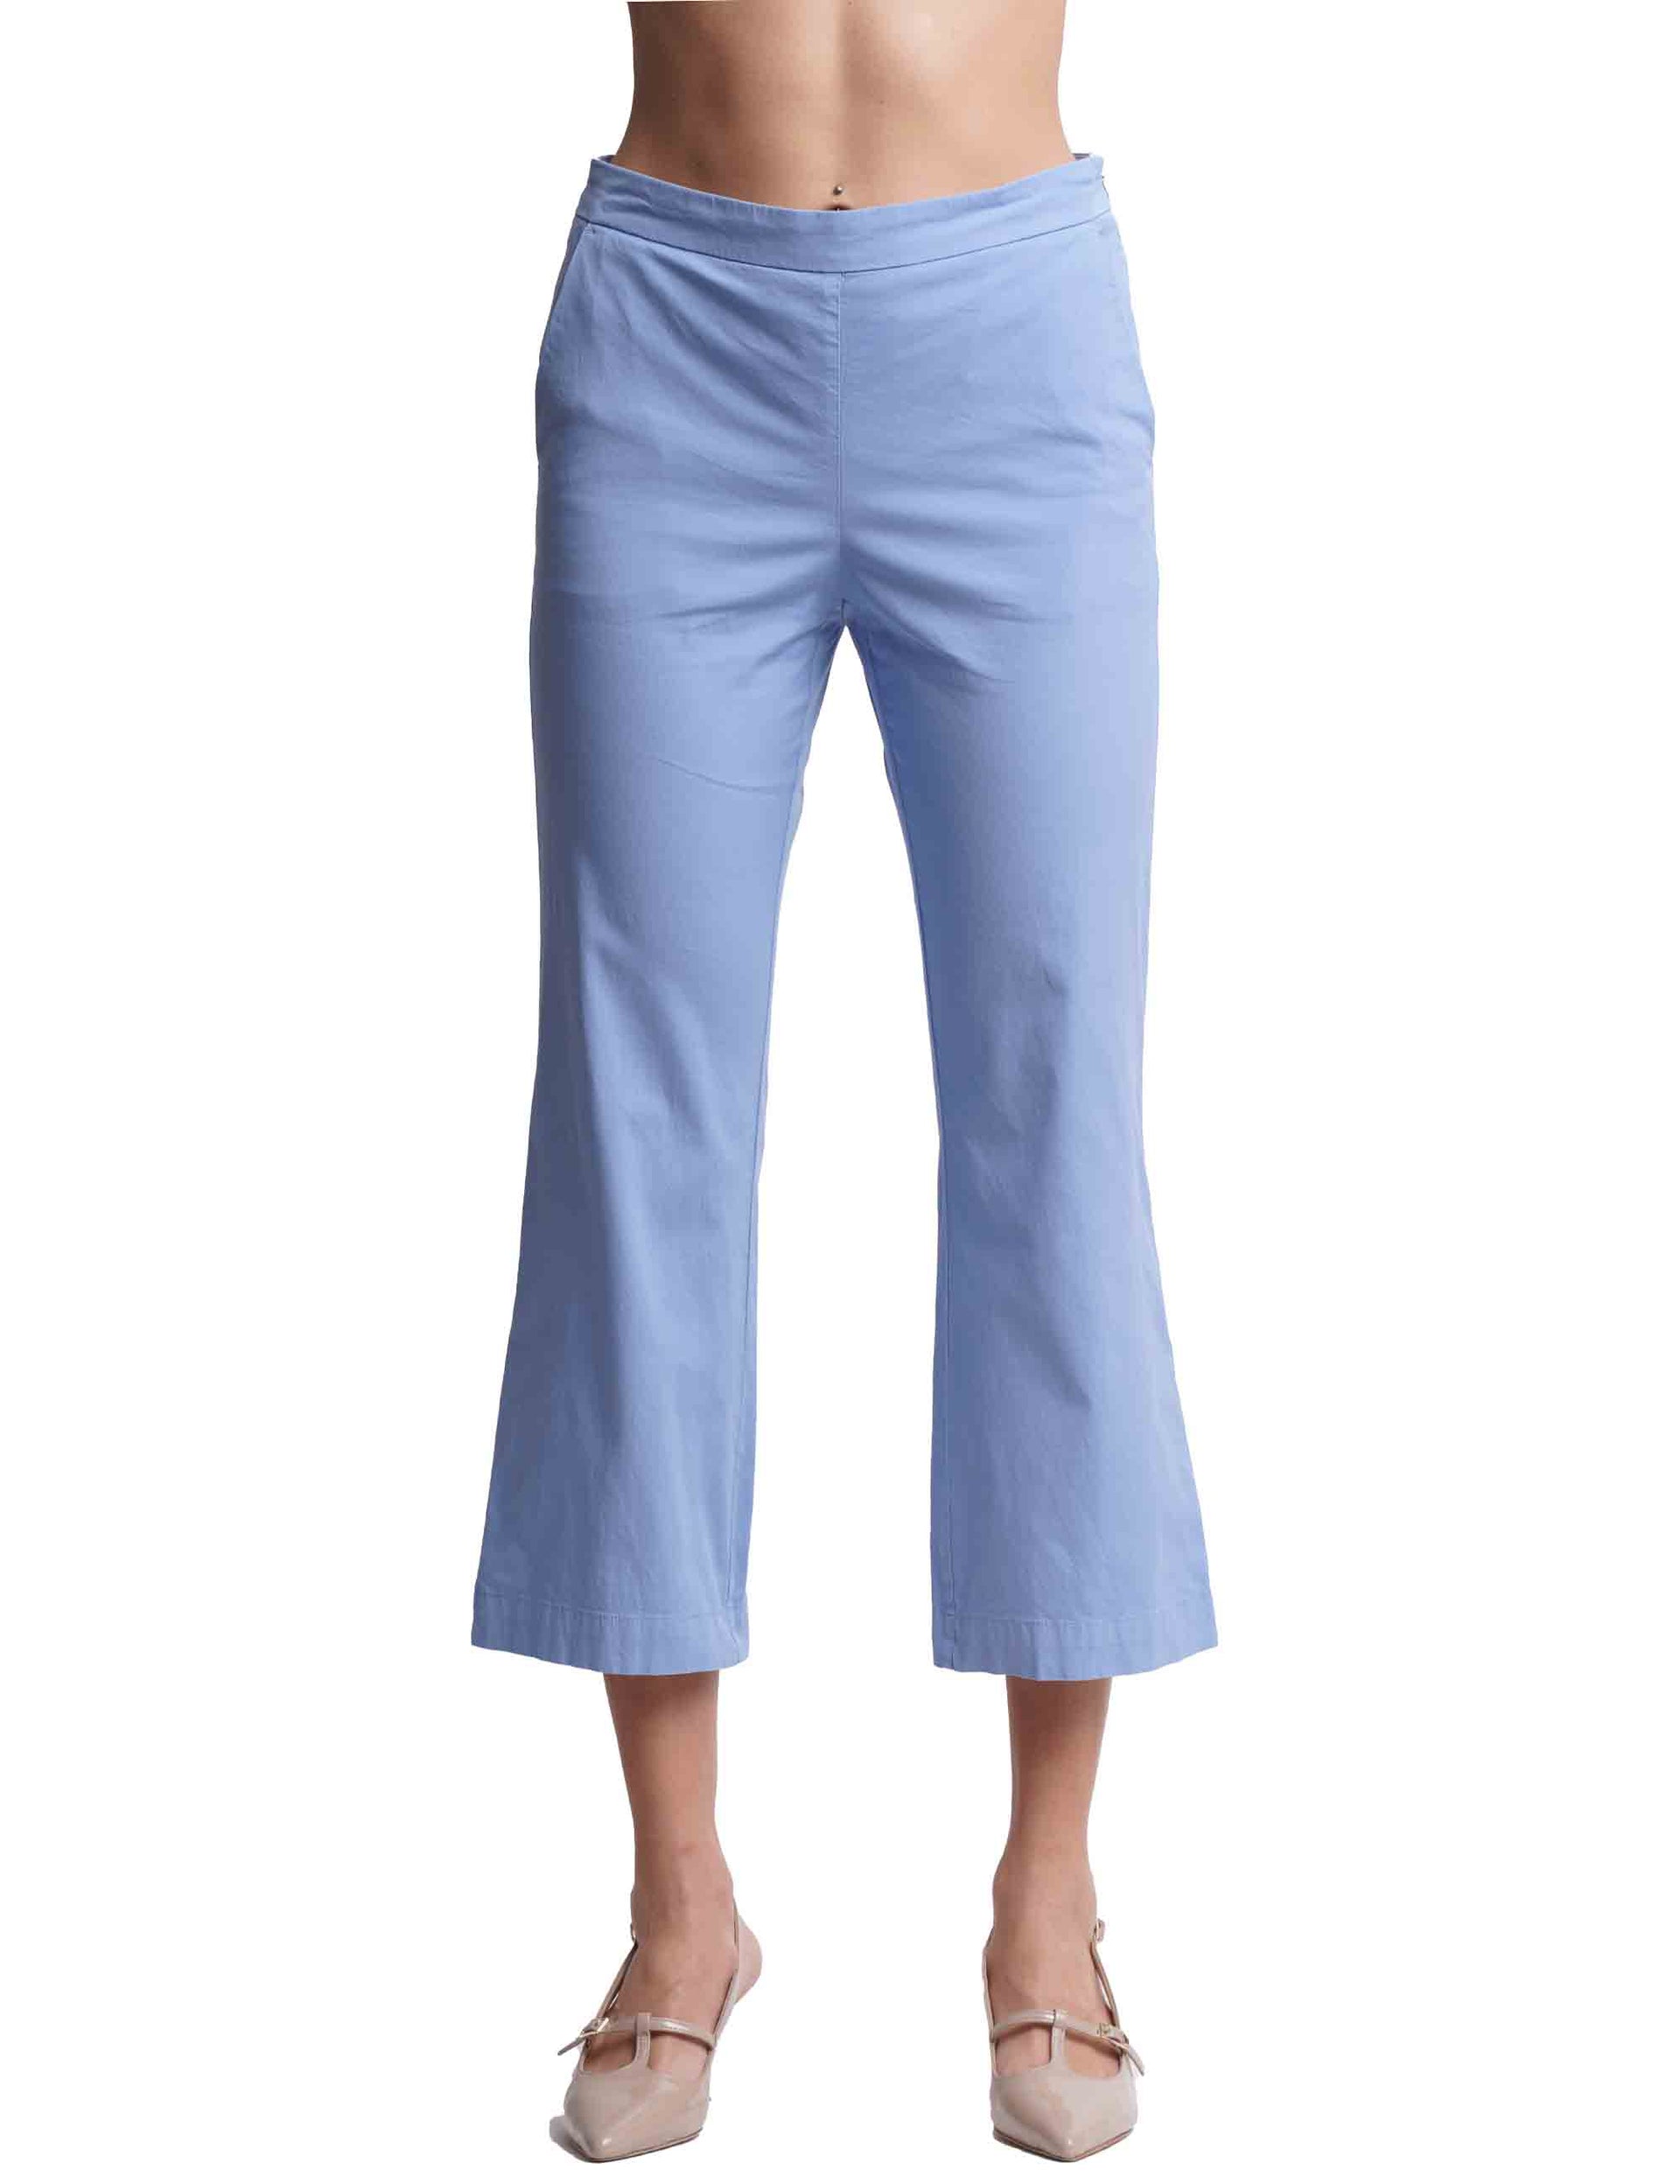 Pantaloni donna Popeline Stretch in cotone azzurro